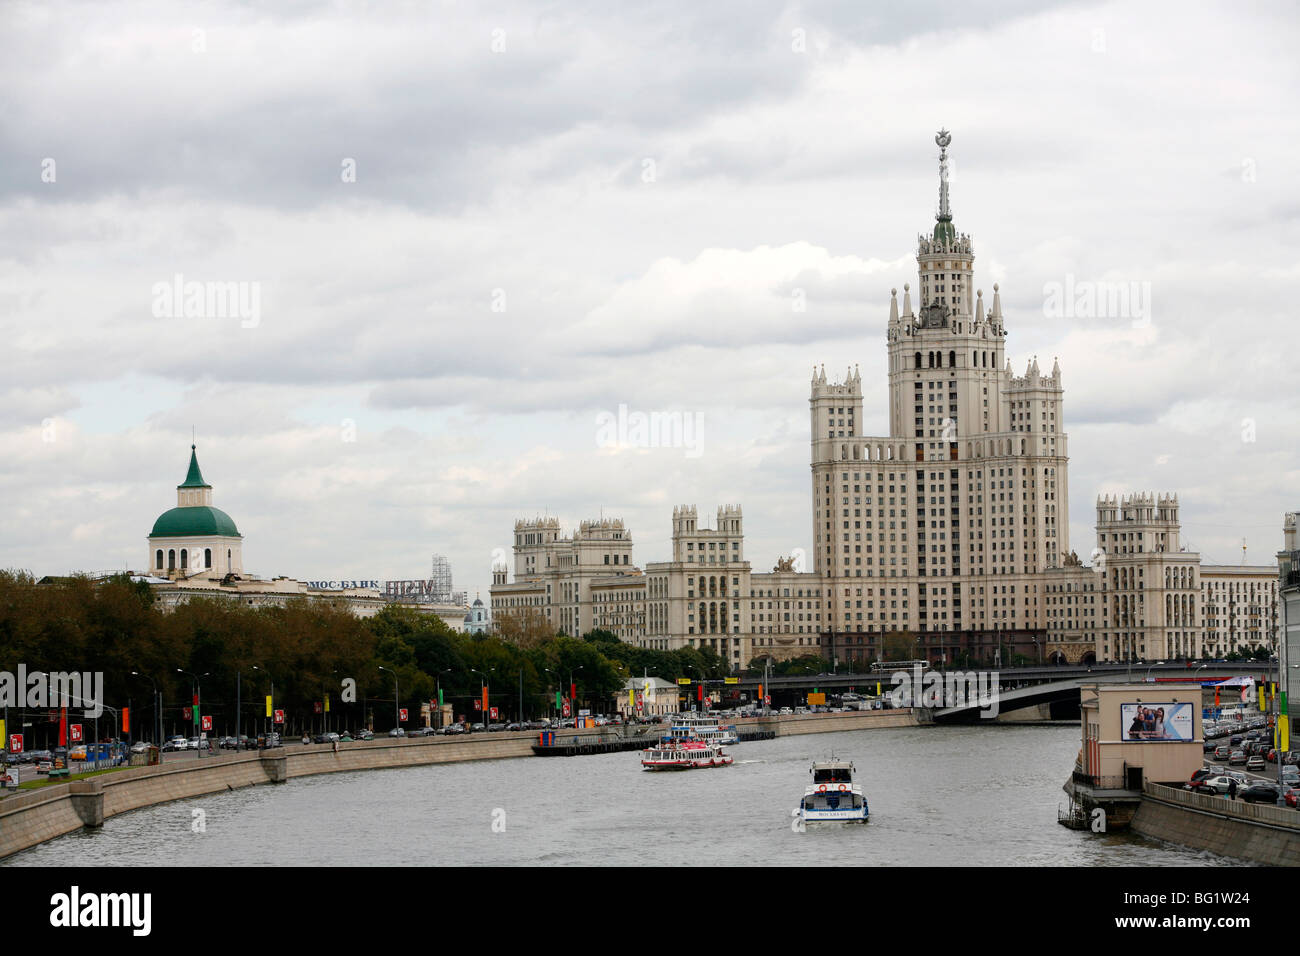 Stalin-Ära Gebäude am Kotelnicheskaya Damm, eine der sieben Schwestern sind sieben stalinistischen Wolkenkratzer, Moskau, Russland Stockfoto